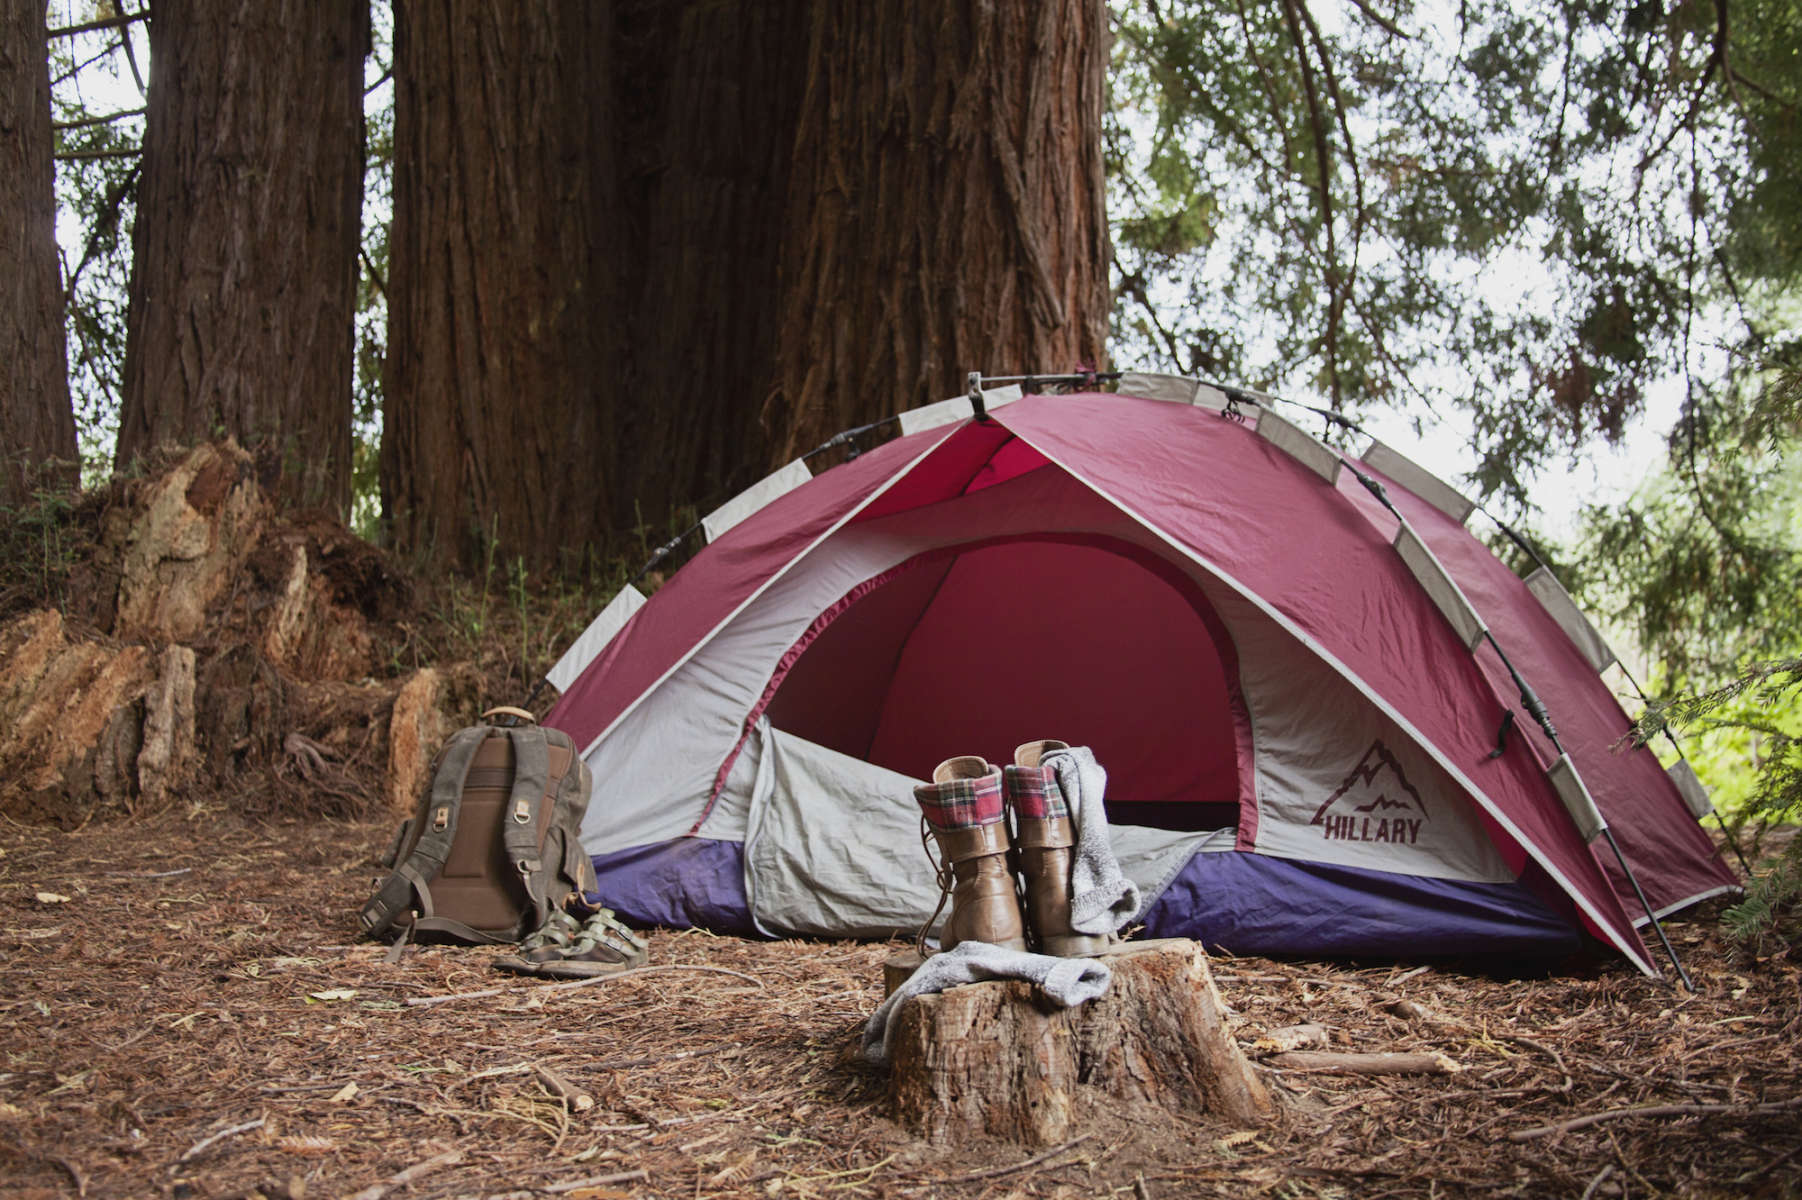 The Campsite, Oz Farm, CA: 12 Hipcamper reviews and 42 photos